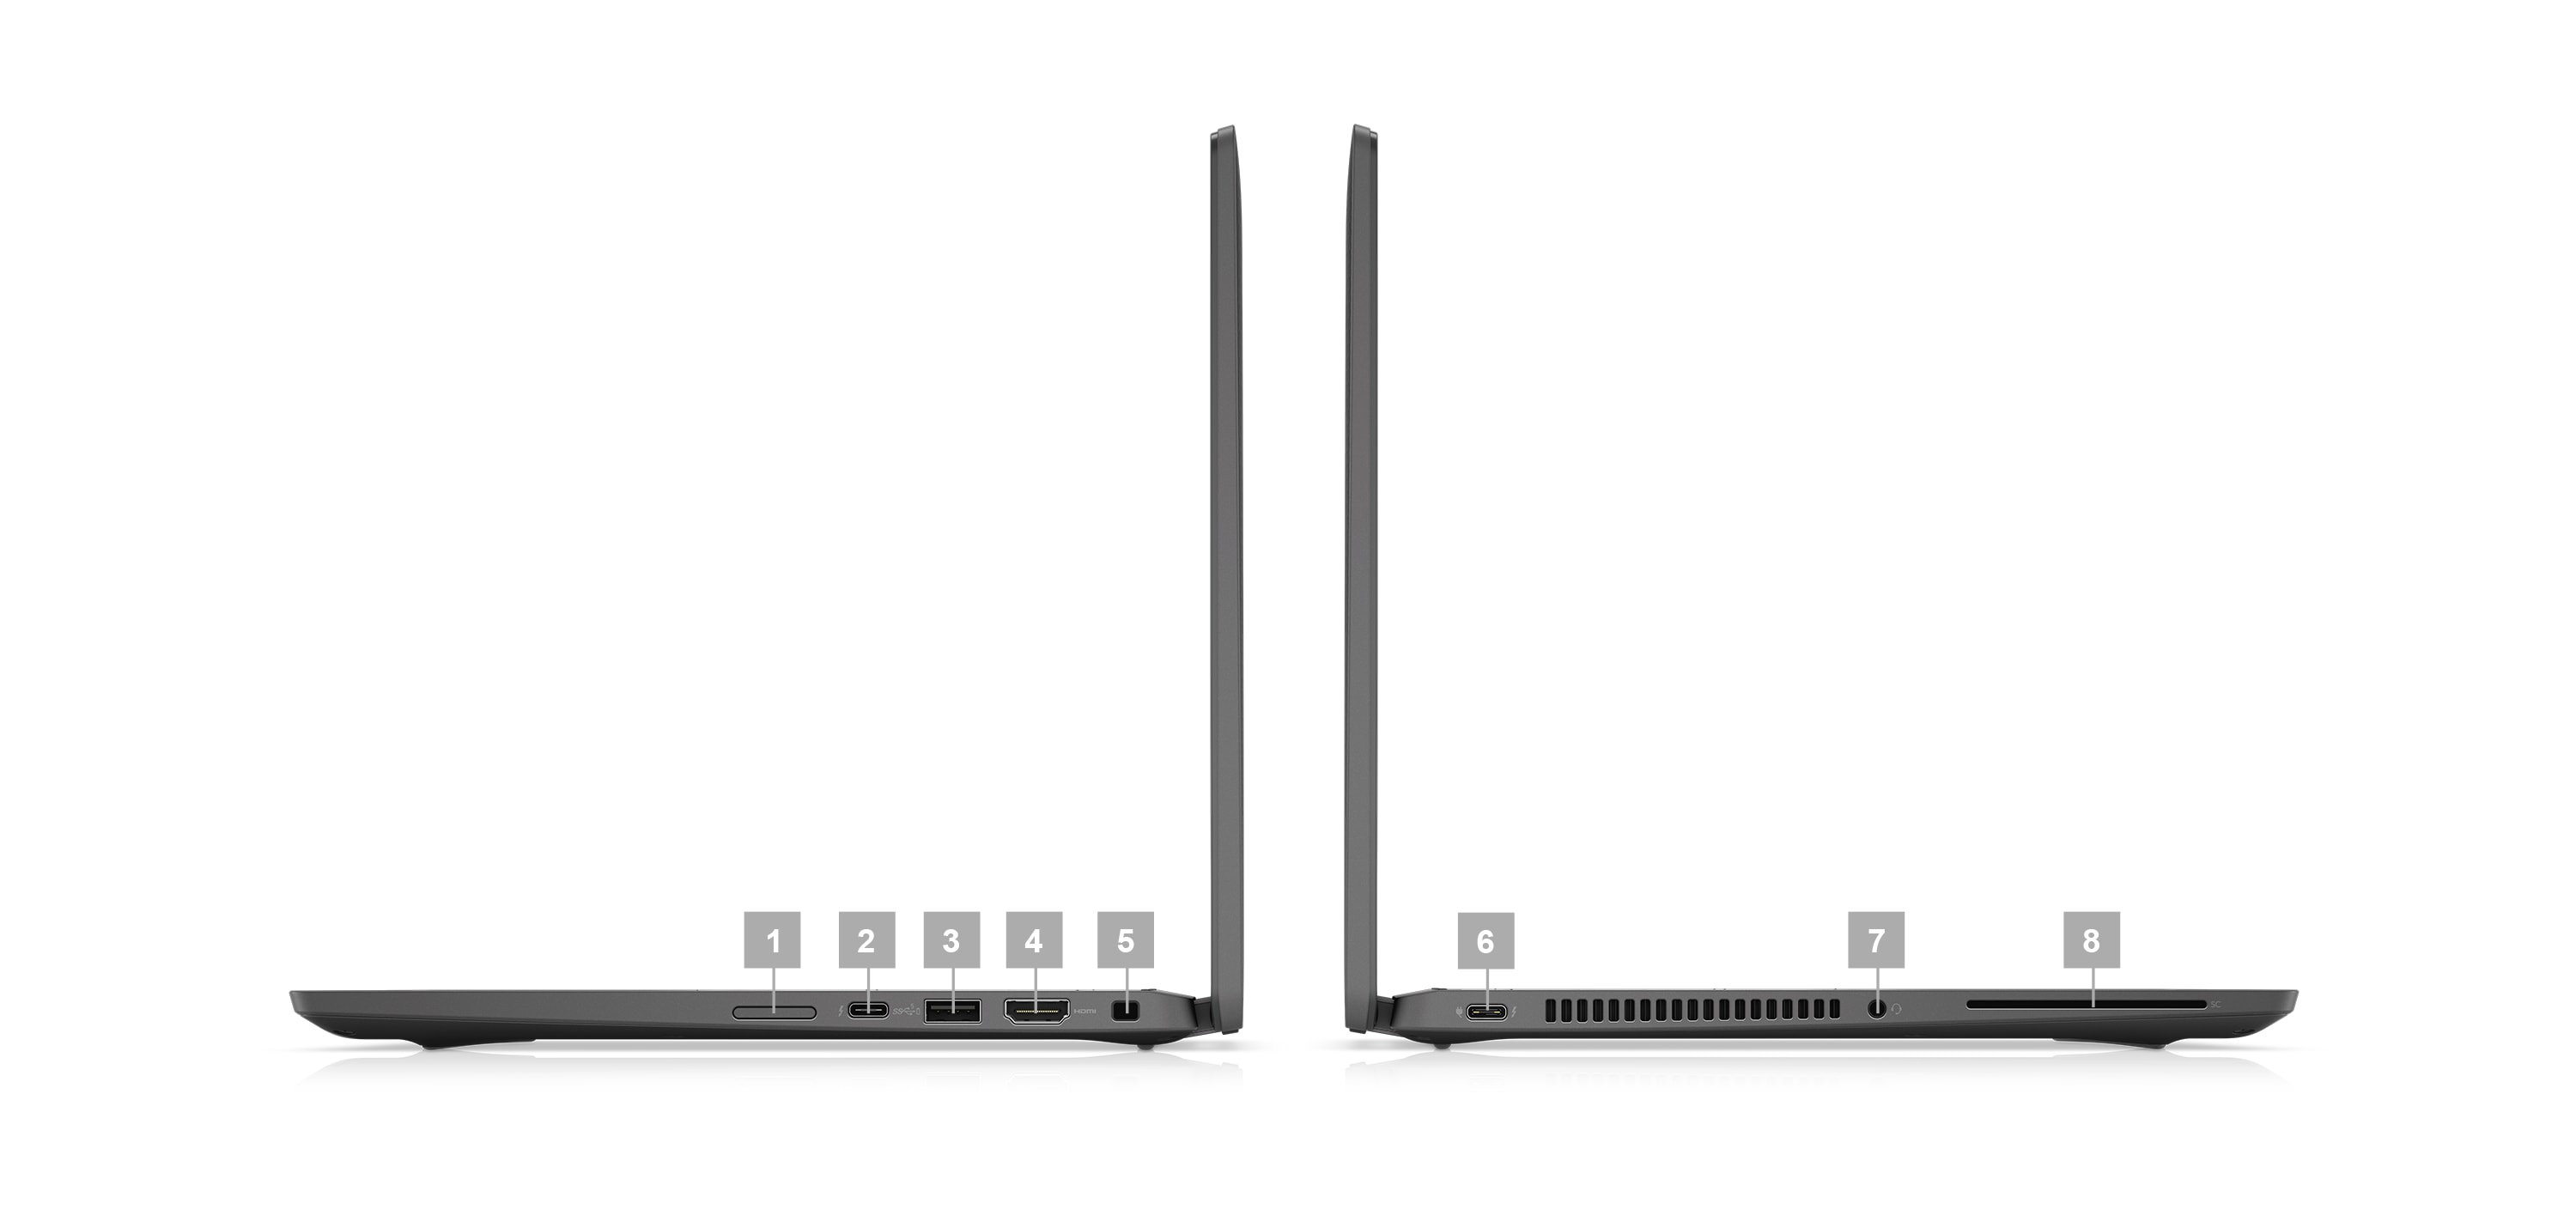 Image de deux ordinateurs portables 2-en-1 Dell Latitude 14 7430 placés de côté avec des numéros compris entre 1 et 8 indiquant les ports présents sur le produit.